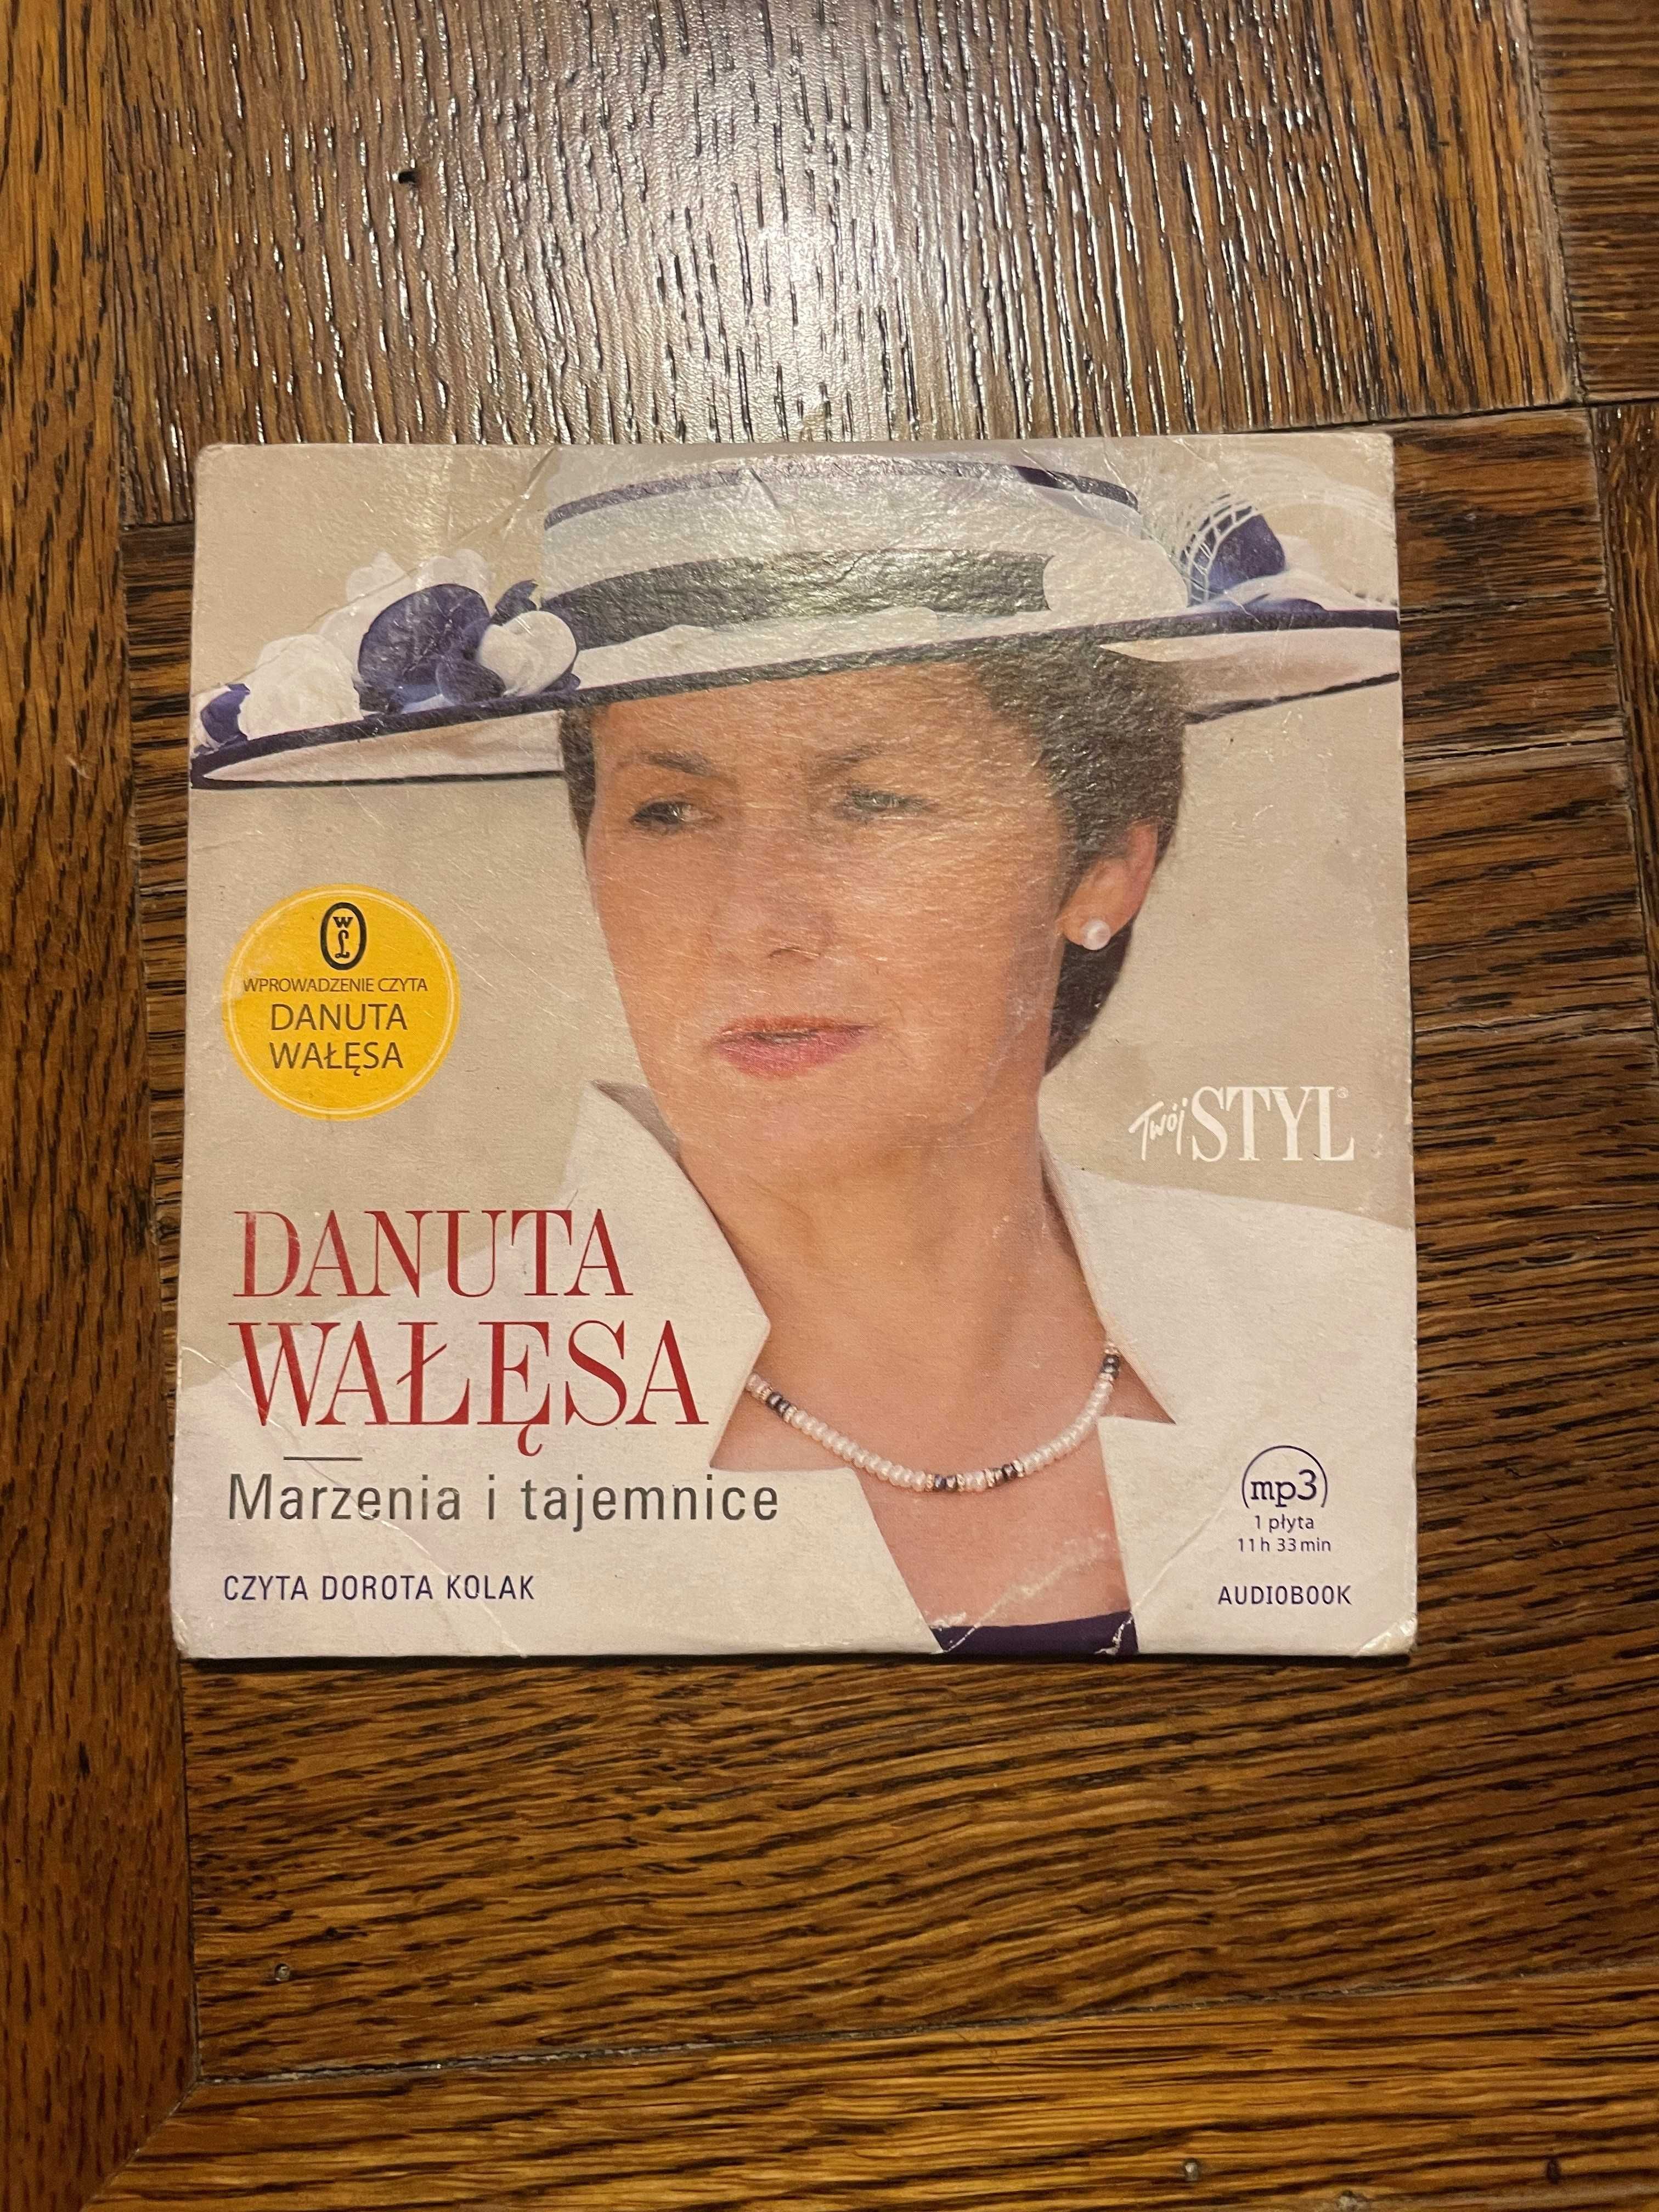 Płyta CD  Danuta Wałęsa "Marzenia i tajemnice"